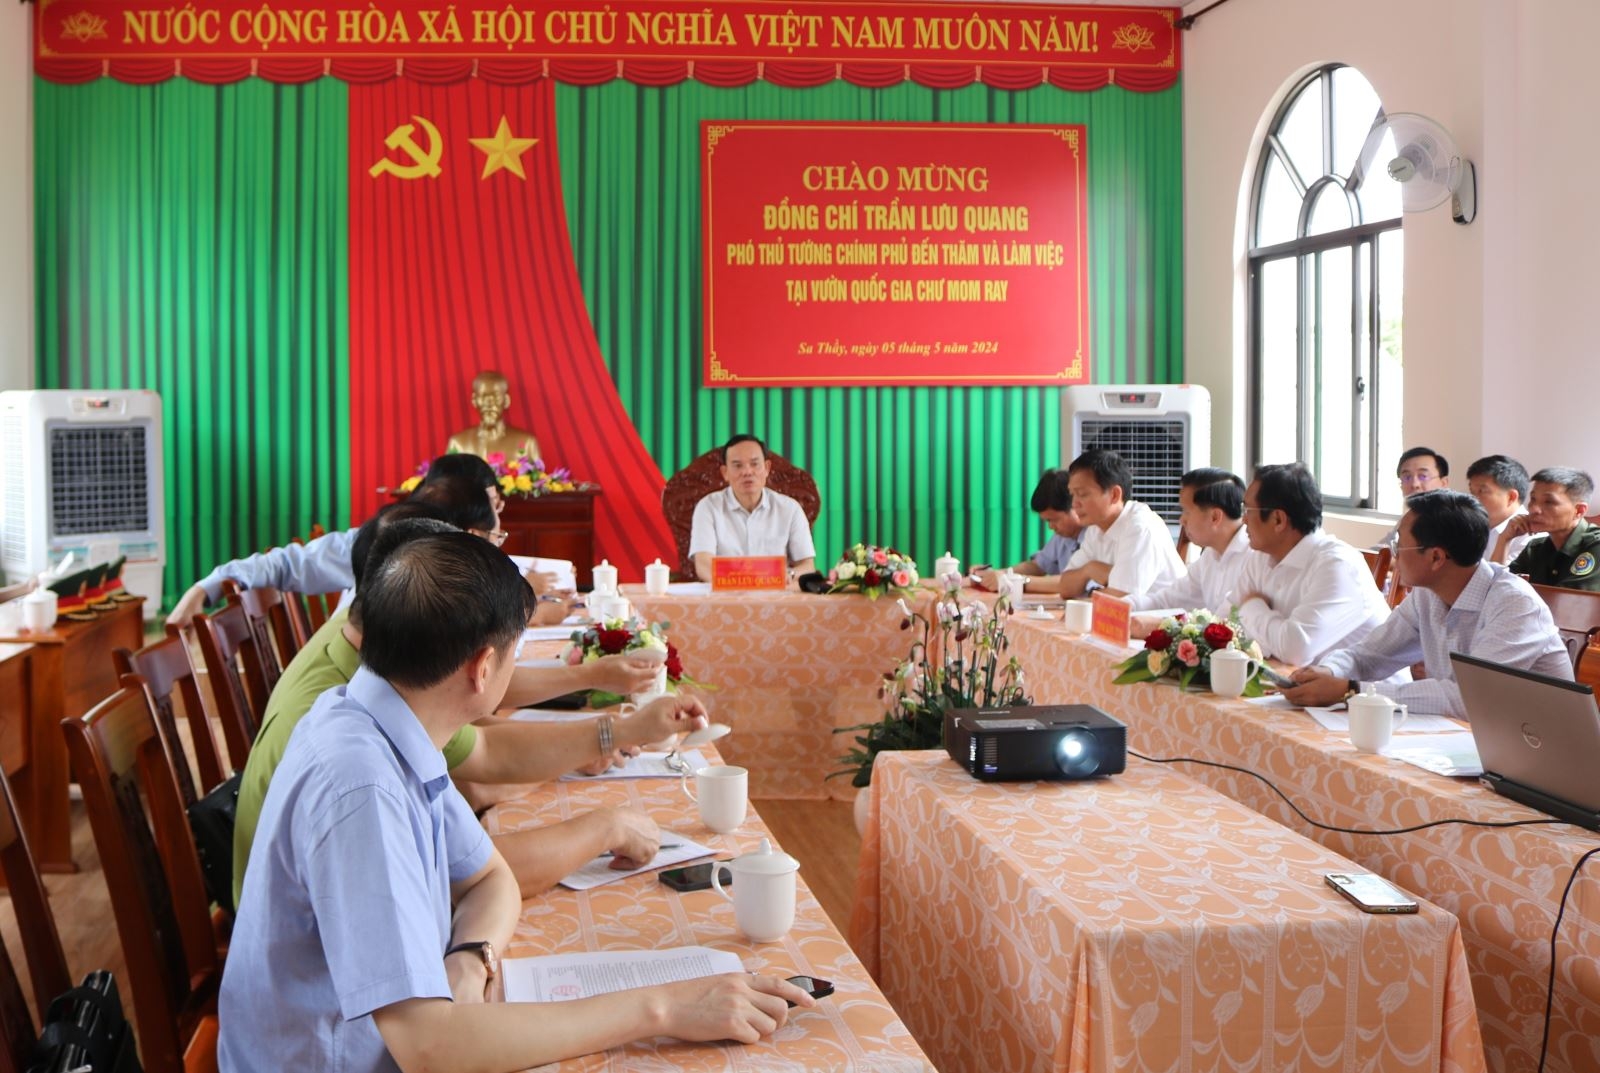 Phó Thủ tướng Chính phủ Trần Lưu Quang thăm, kiểm tra công tác QLBVR tại Vườn Quốc gia Chư Mom Ray